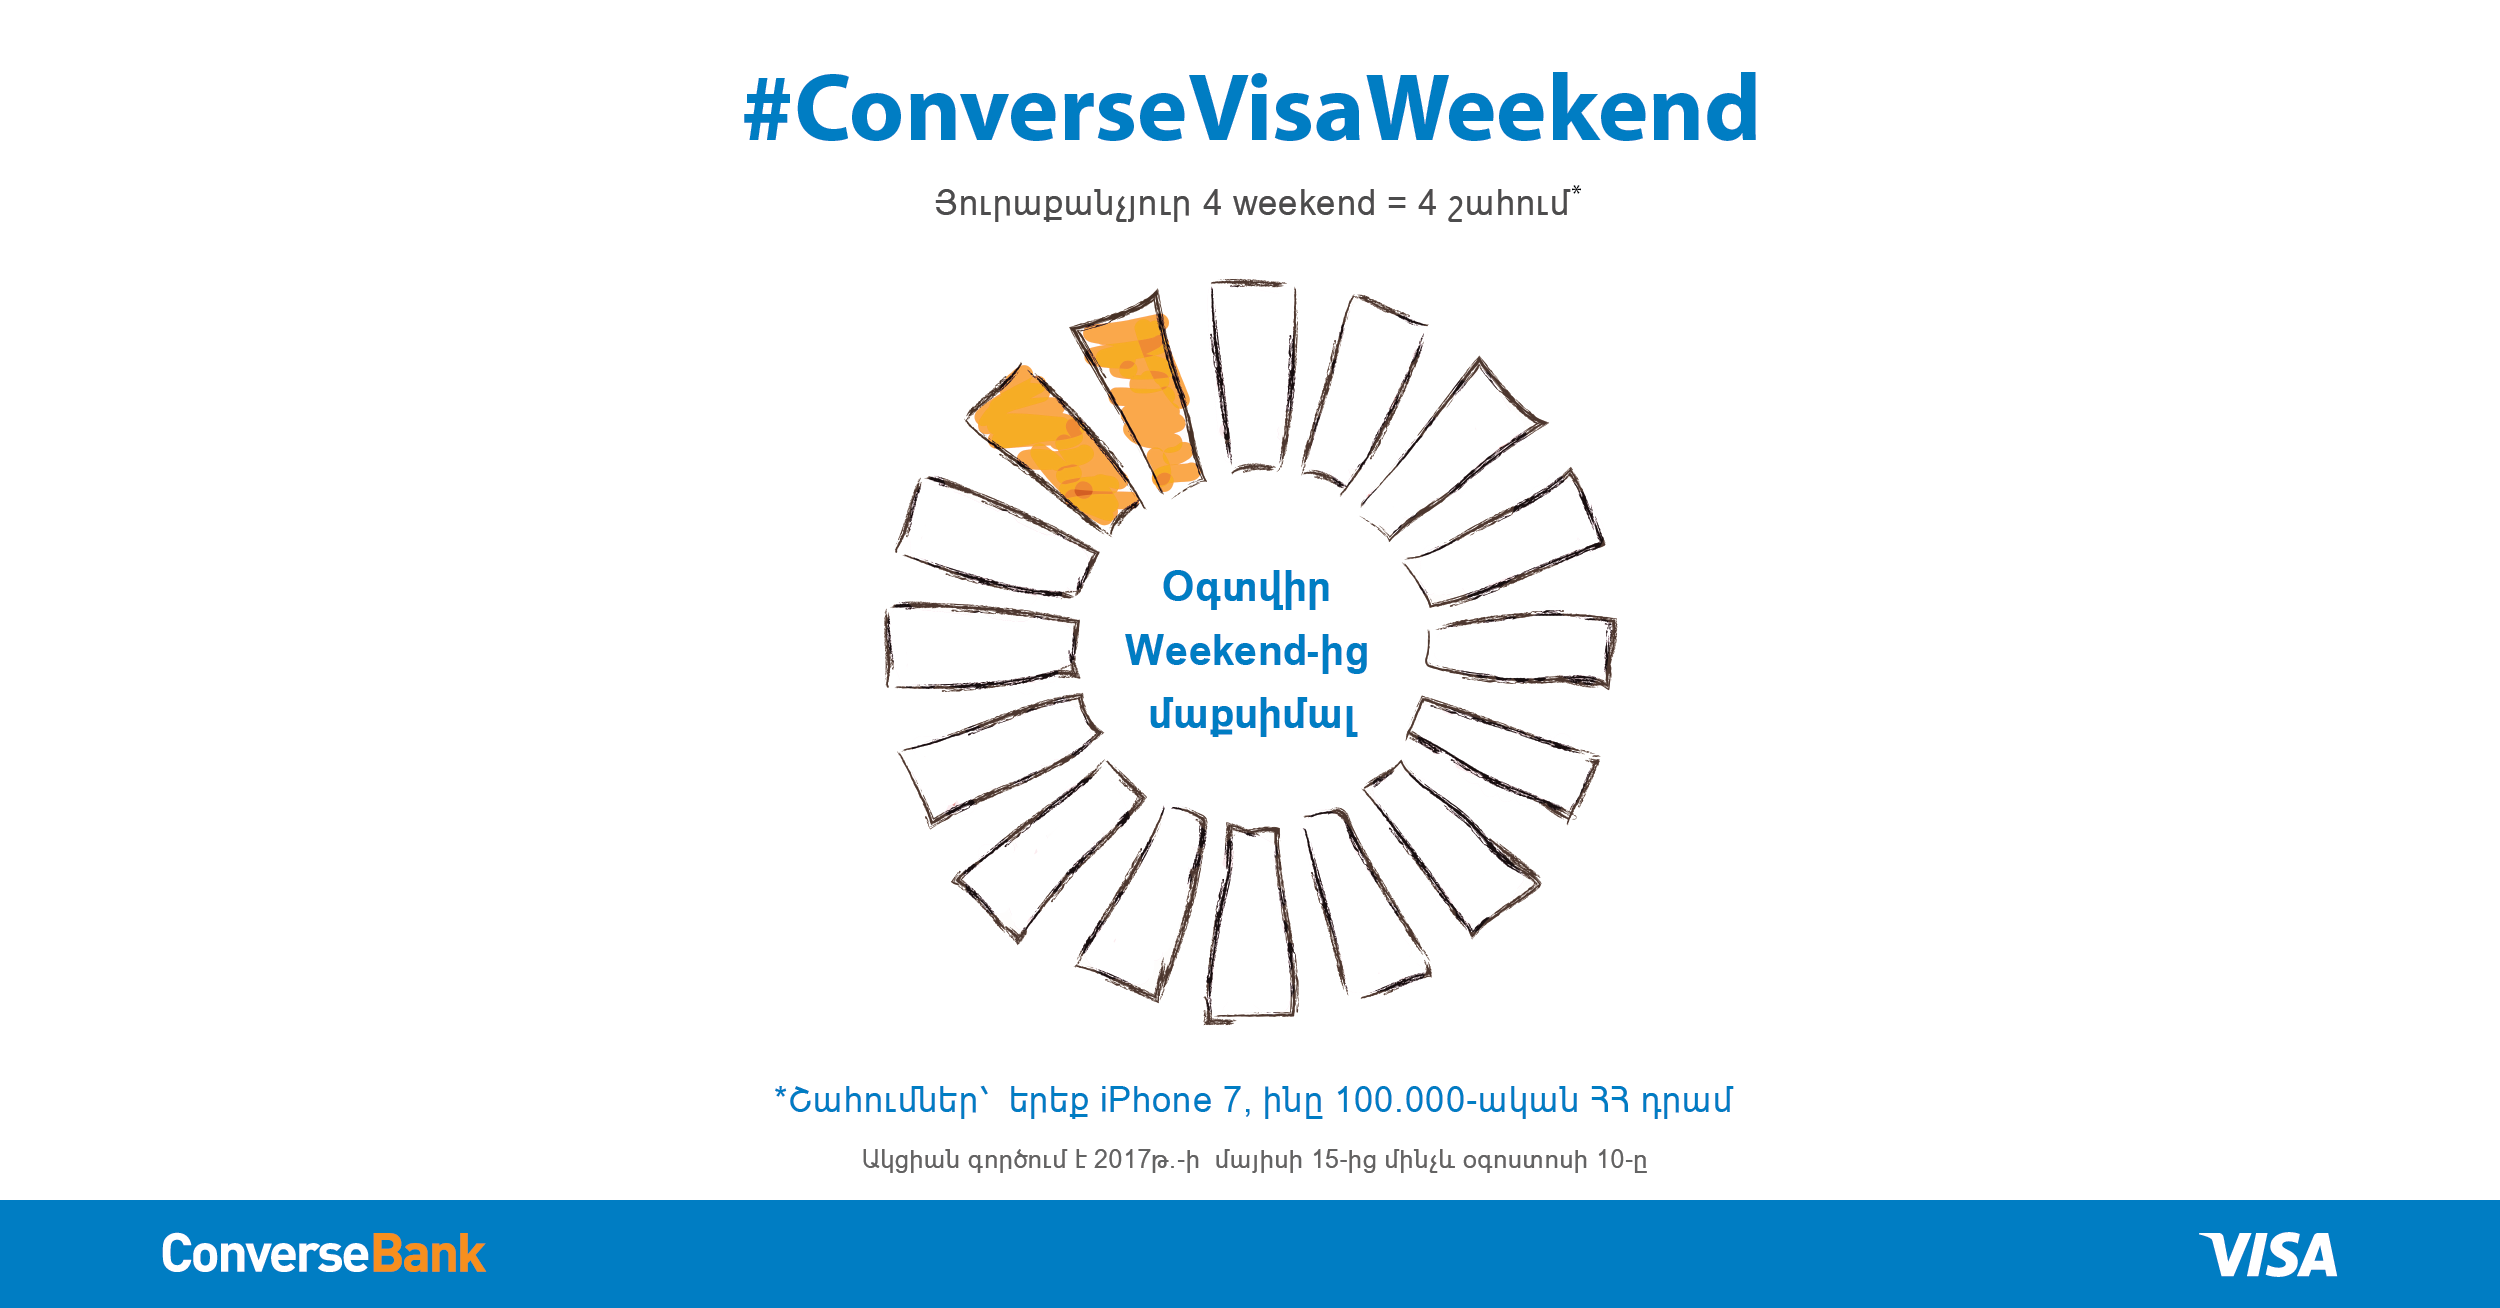 Конверс Банк для картождержателей Visa запускает акцию #ConverseVisaWeekend